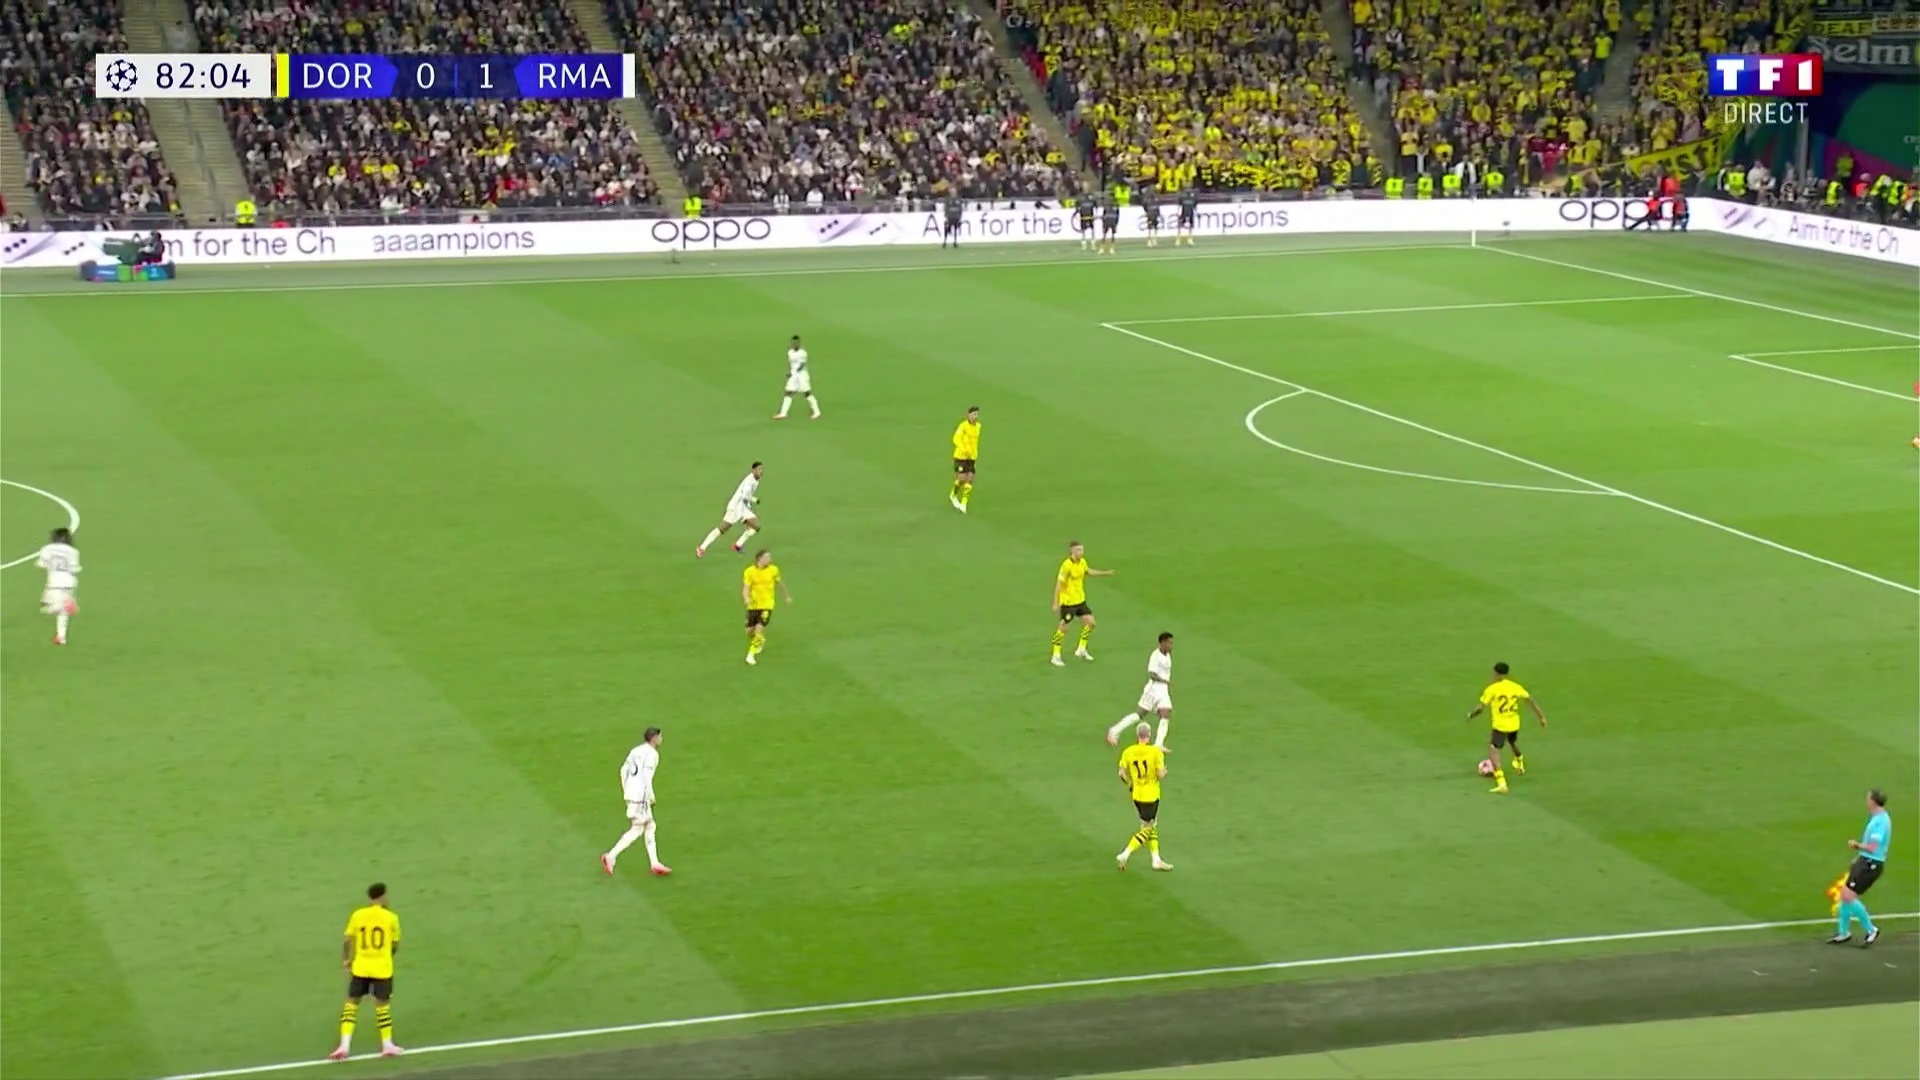 Dortmund 0 - [2] Real Madrid - Vinicius Jr 83'